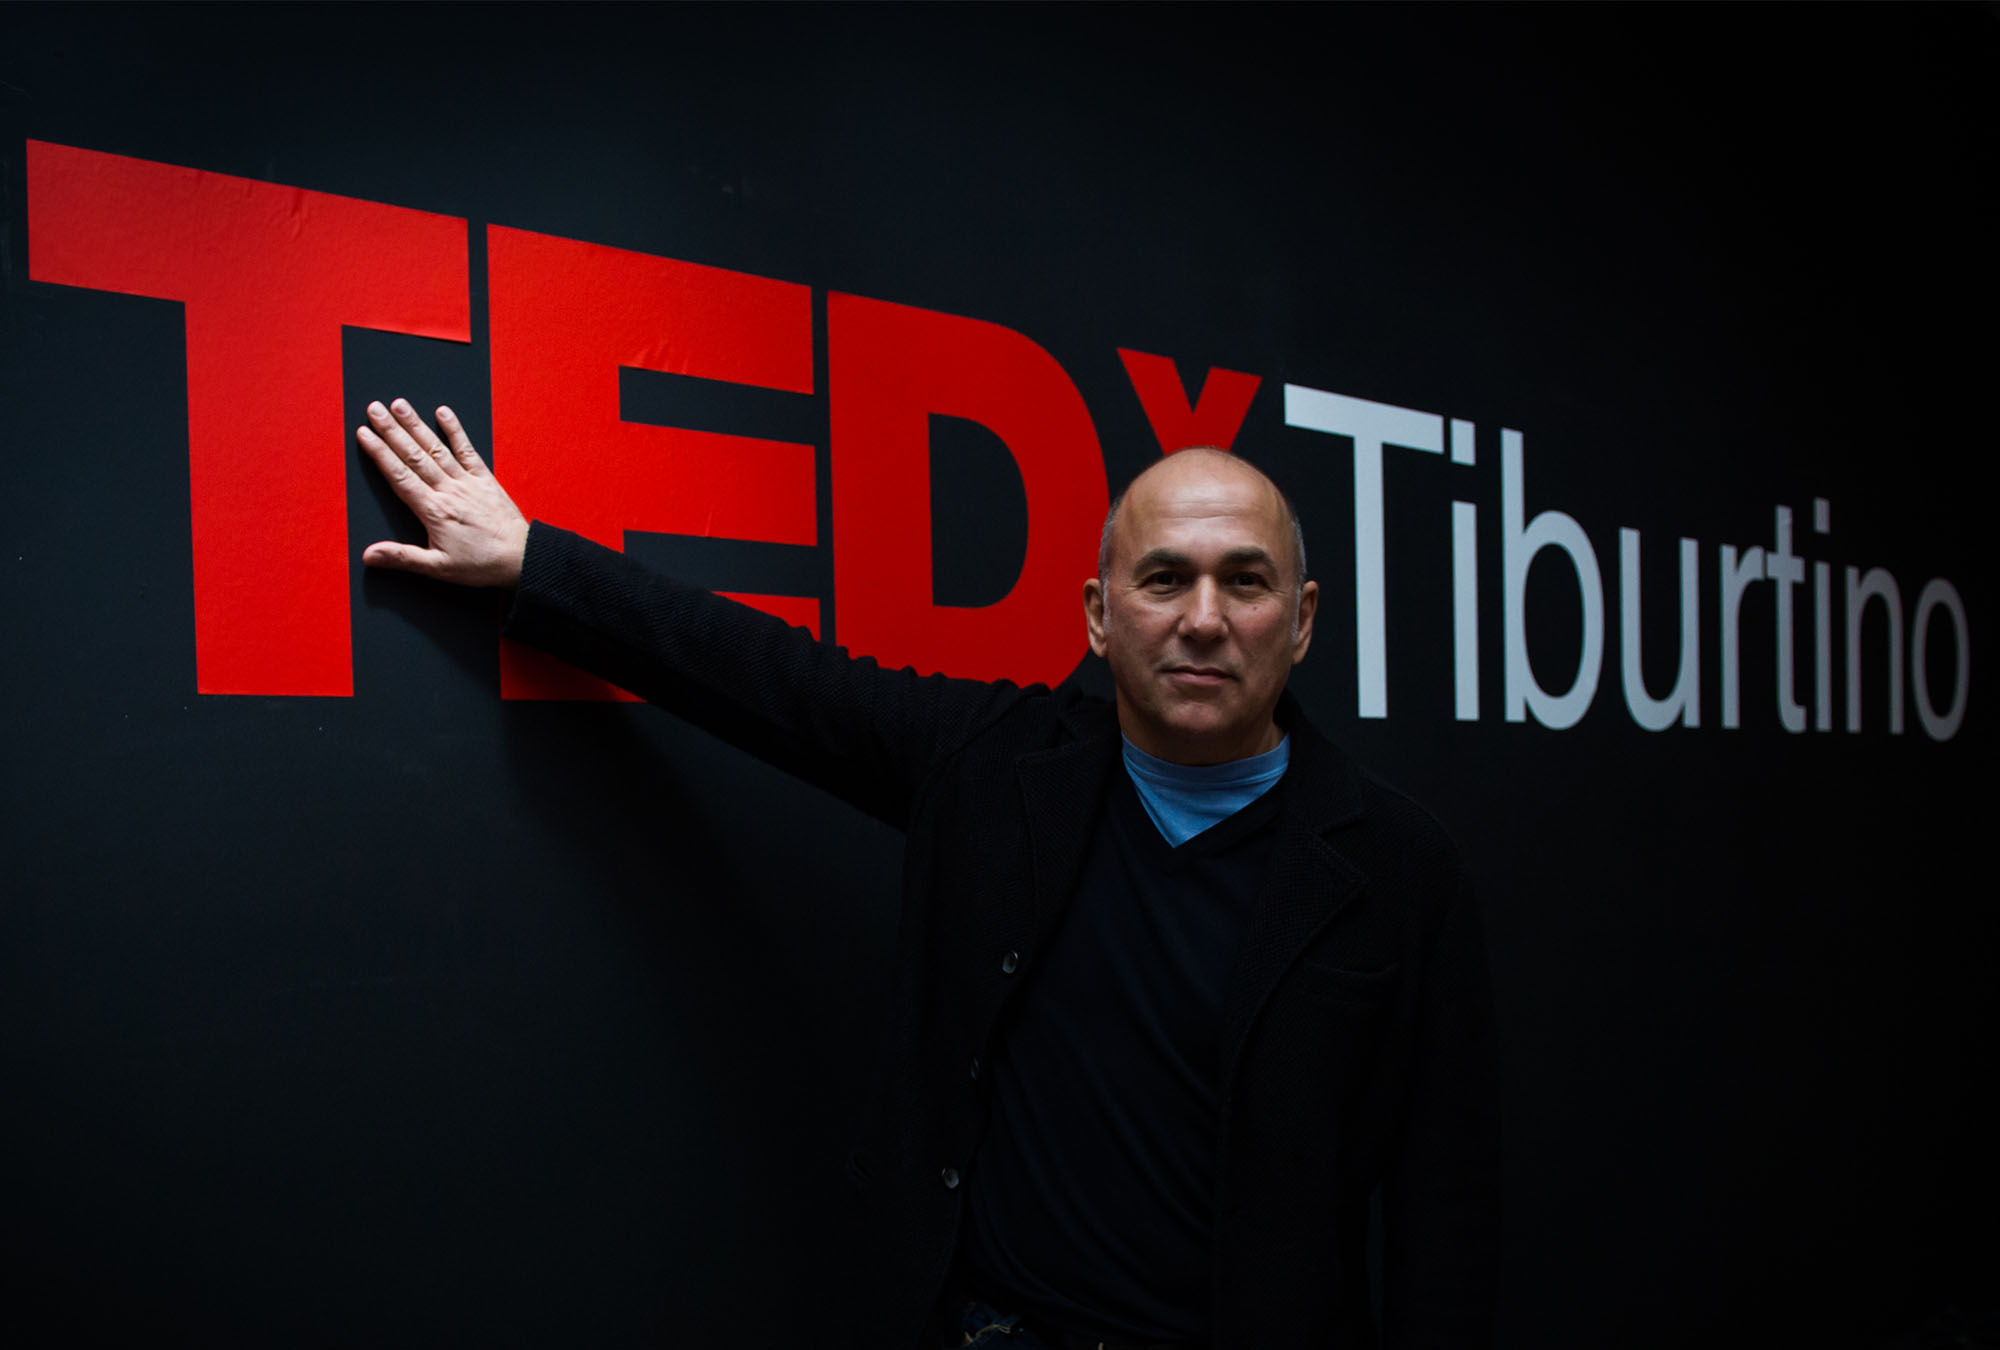 Tedx Tiburtino